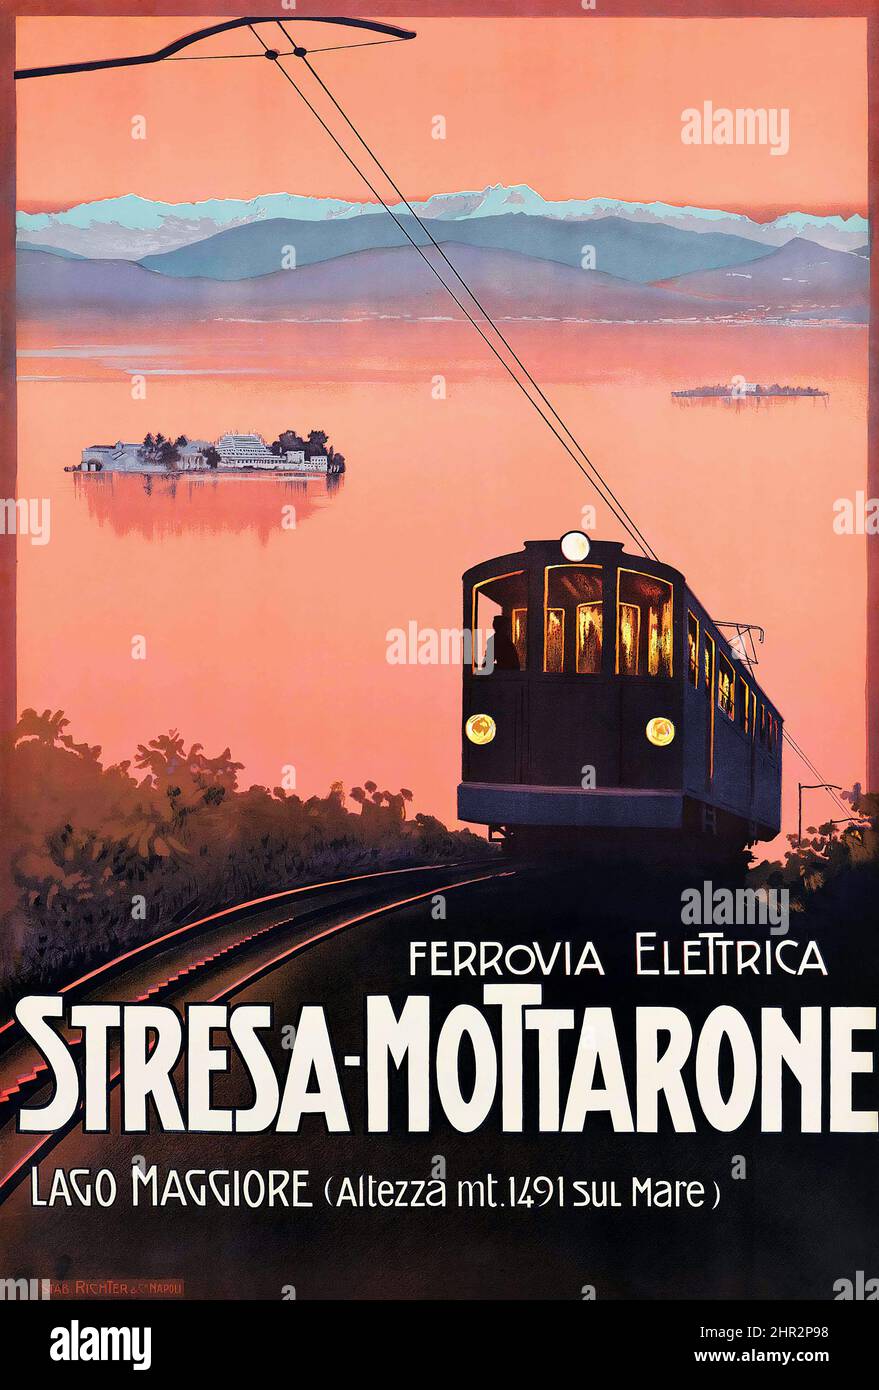 Anonymer Künstler. STRESA-MOTTARONE, LAGO MAGGIORE - Vintage-Werbeplakat für eine Seilbahn/Straßenbahn. Stockfoto